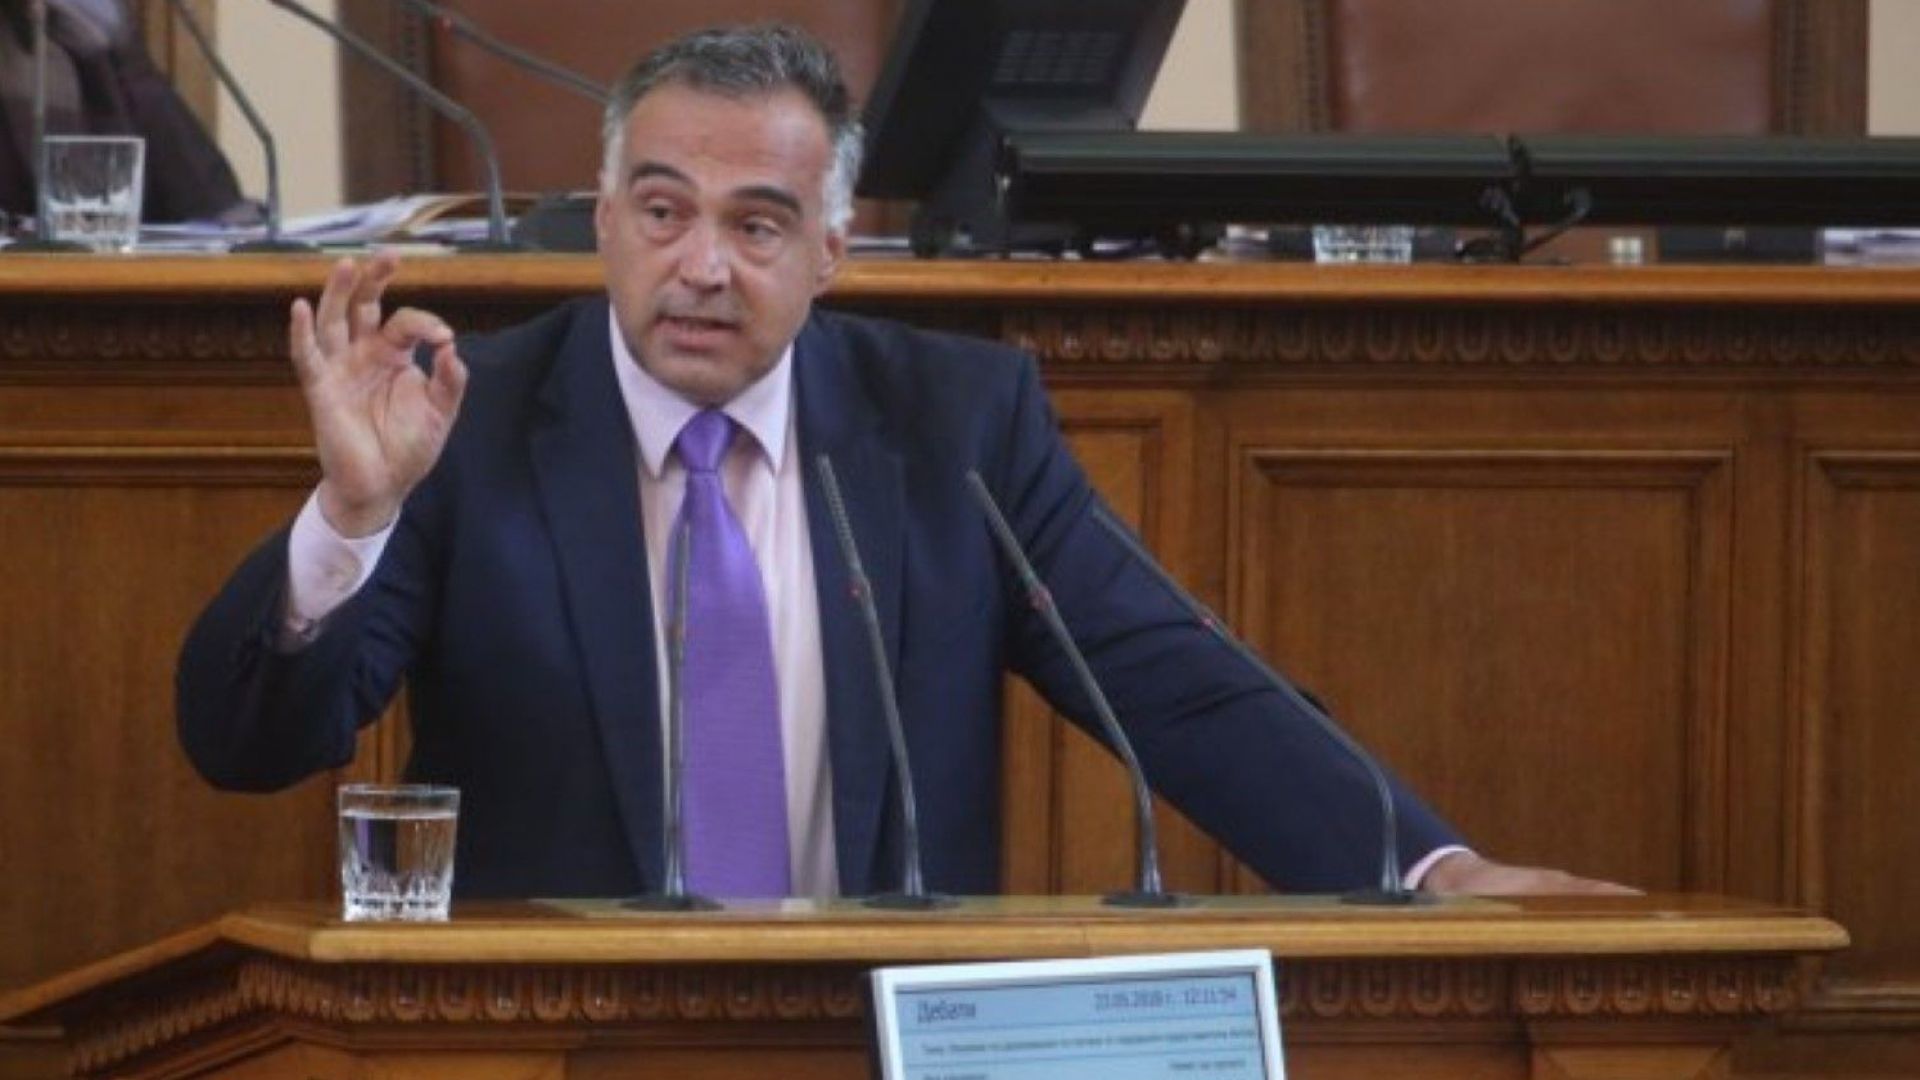 Антон Кутев подаде оставка като говорител на правителството